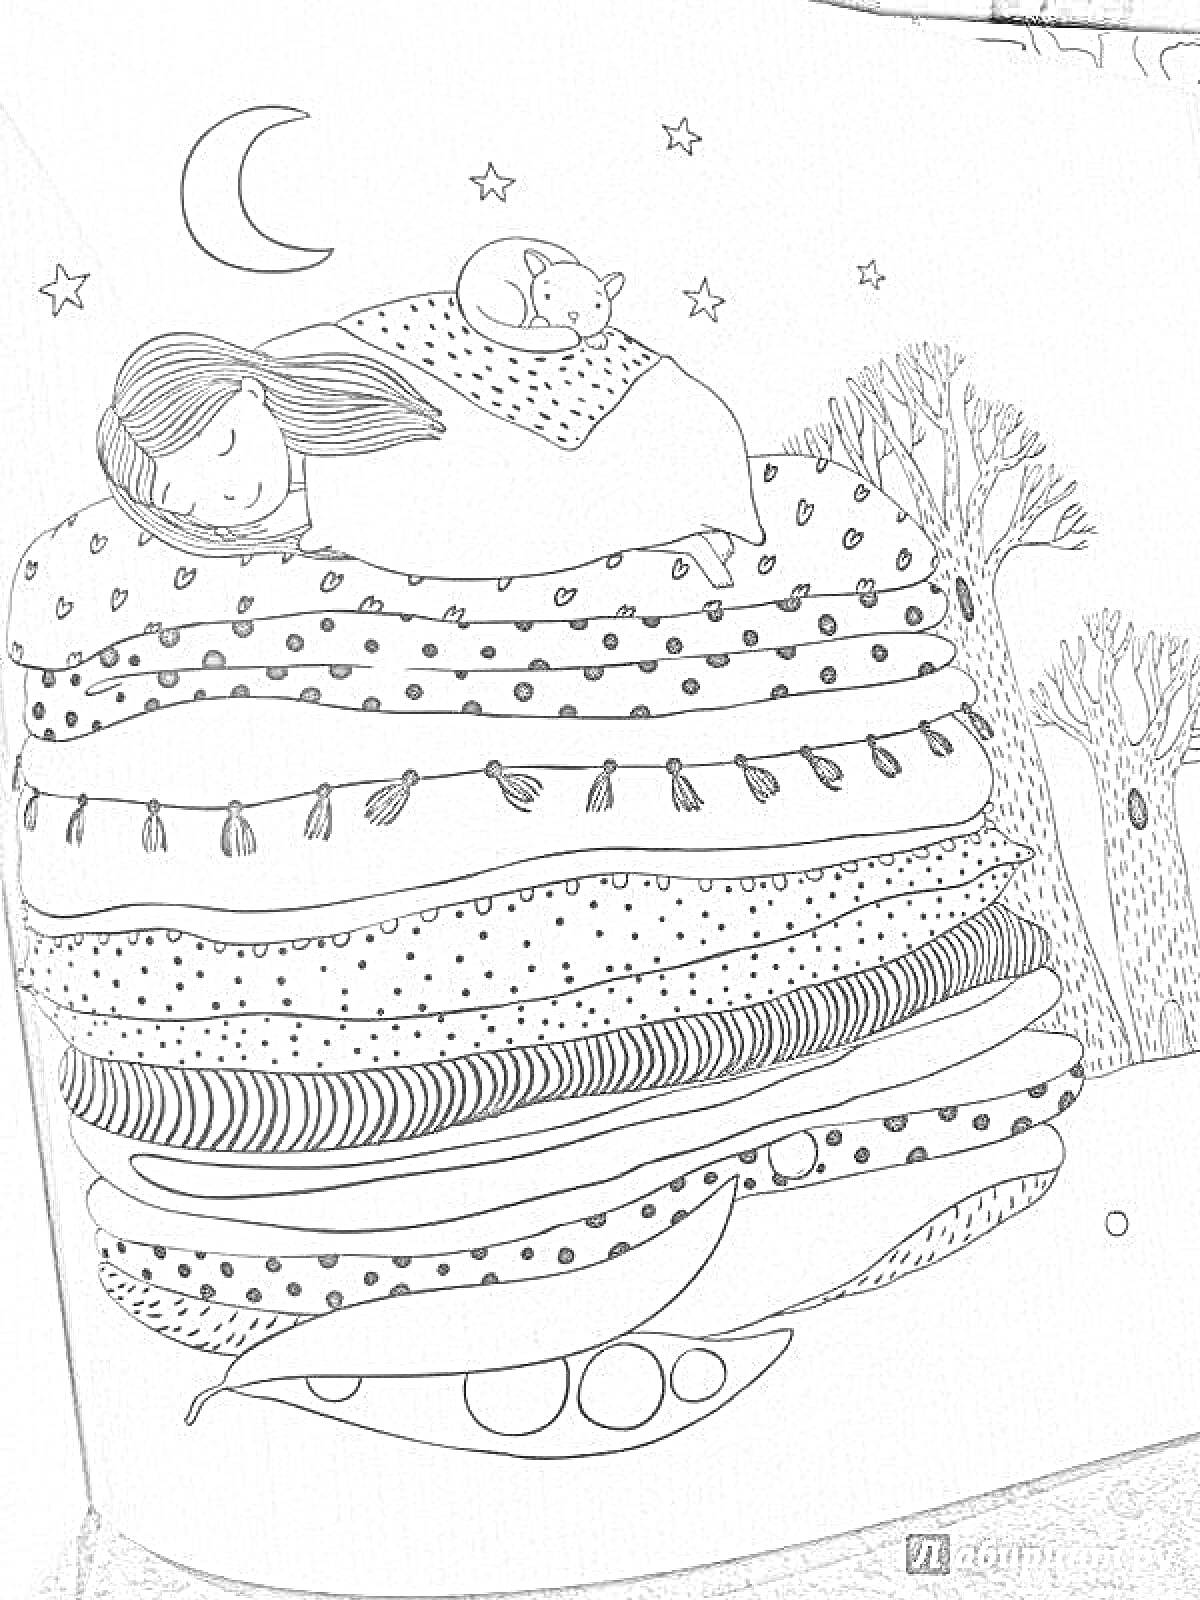 Спящая девочка на уютной куче подушек с кошкой, горошинами, деревьями, звездами и луной